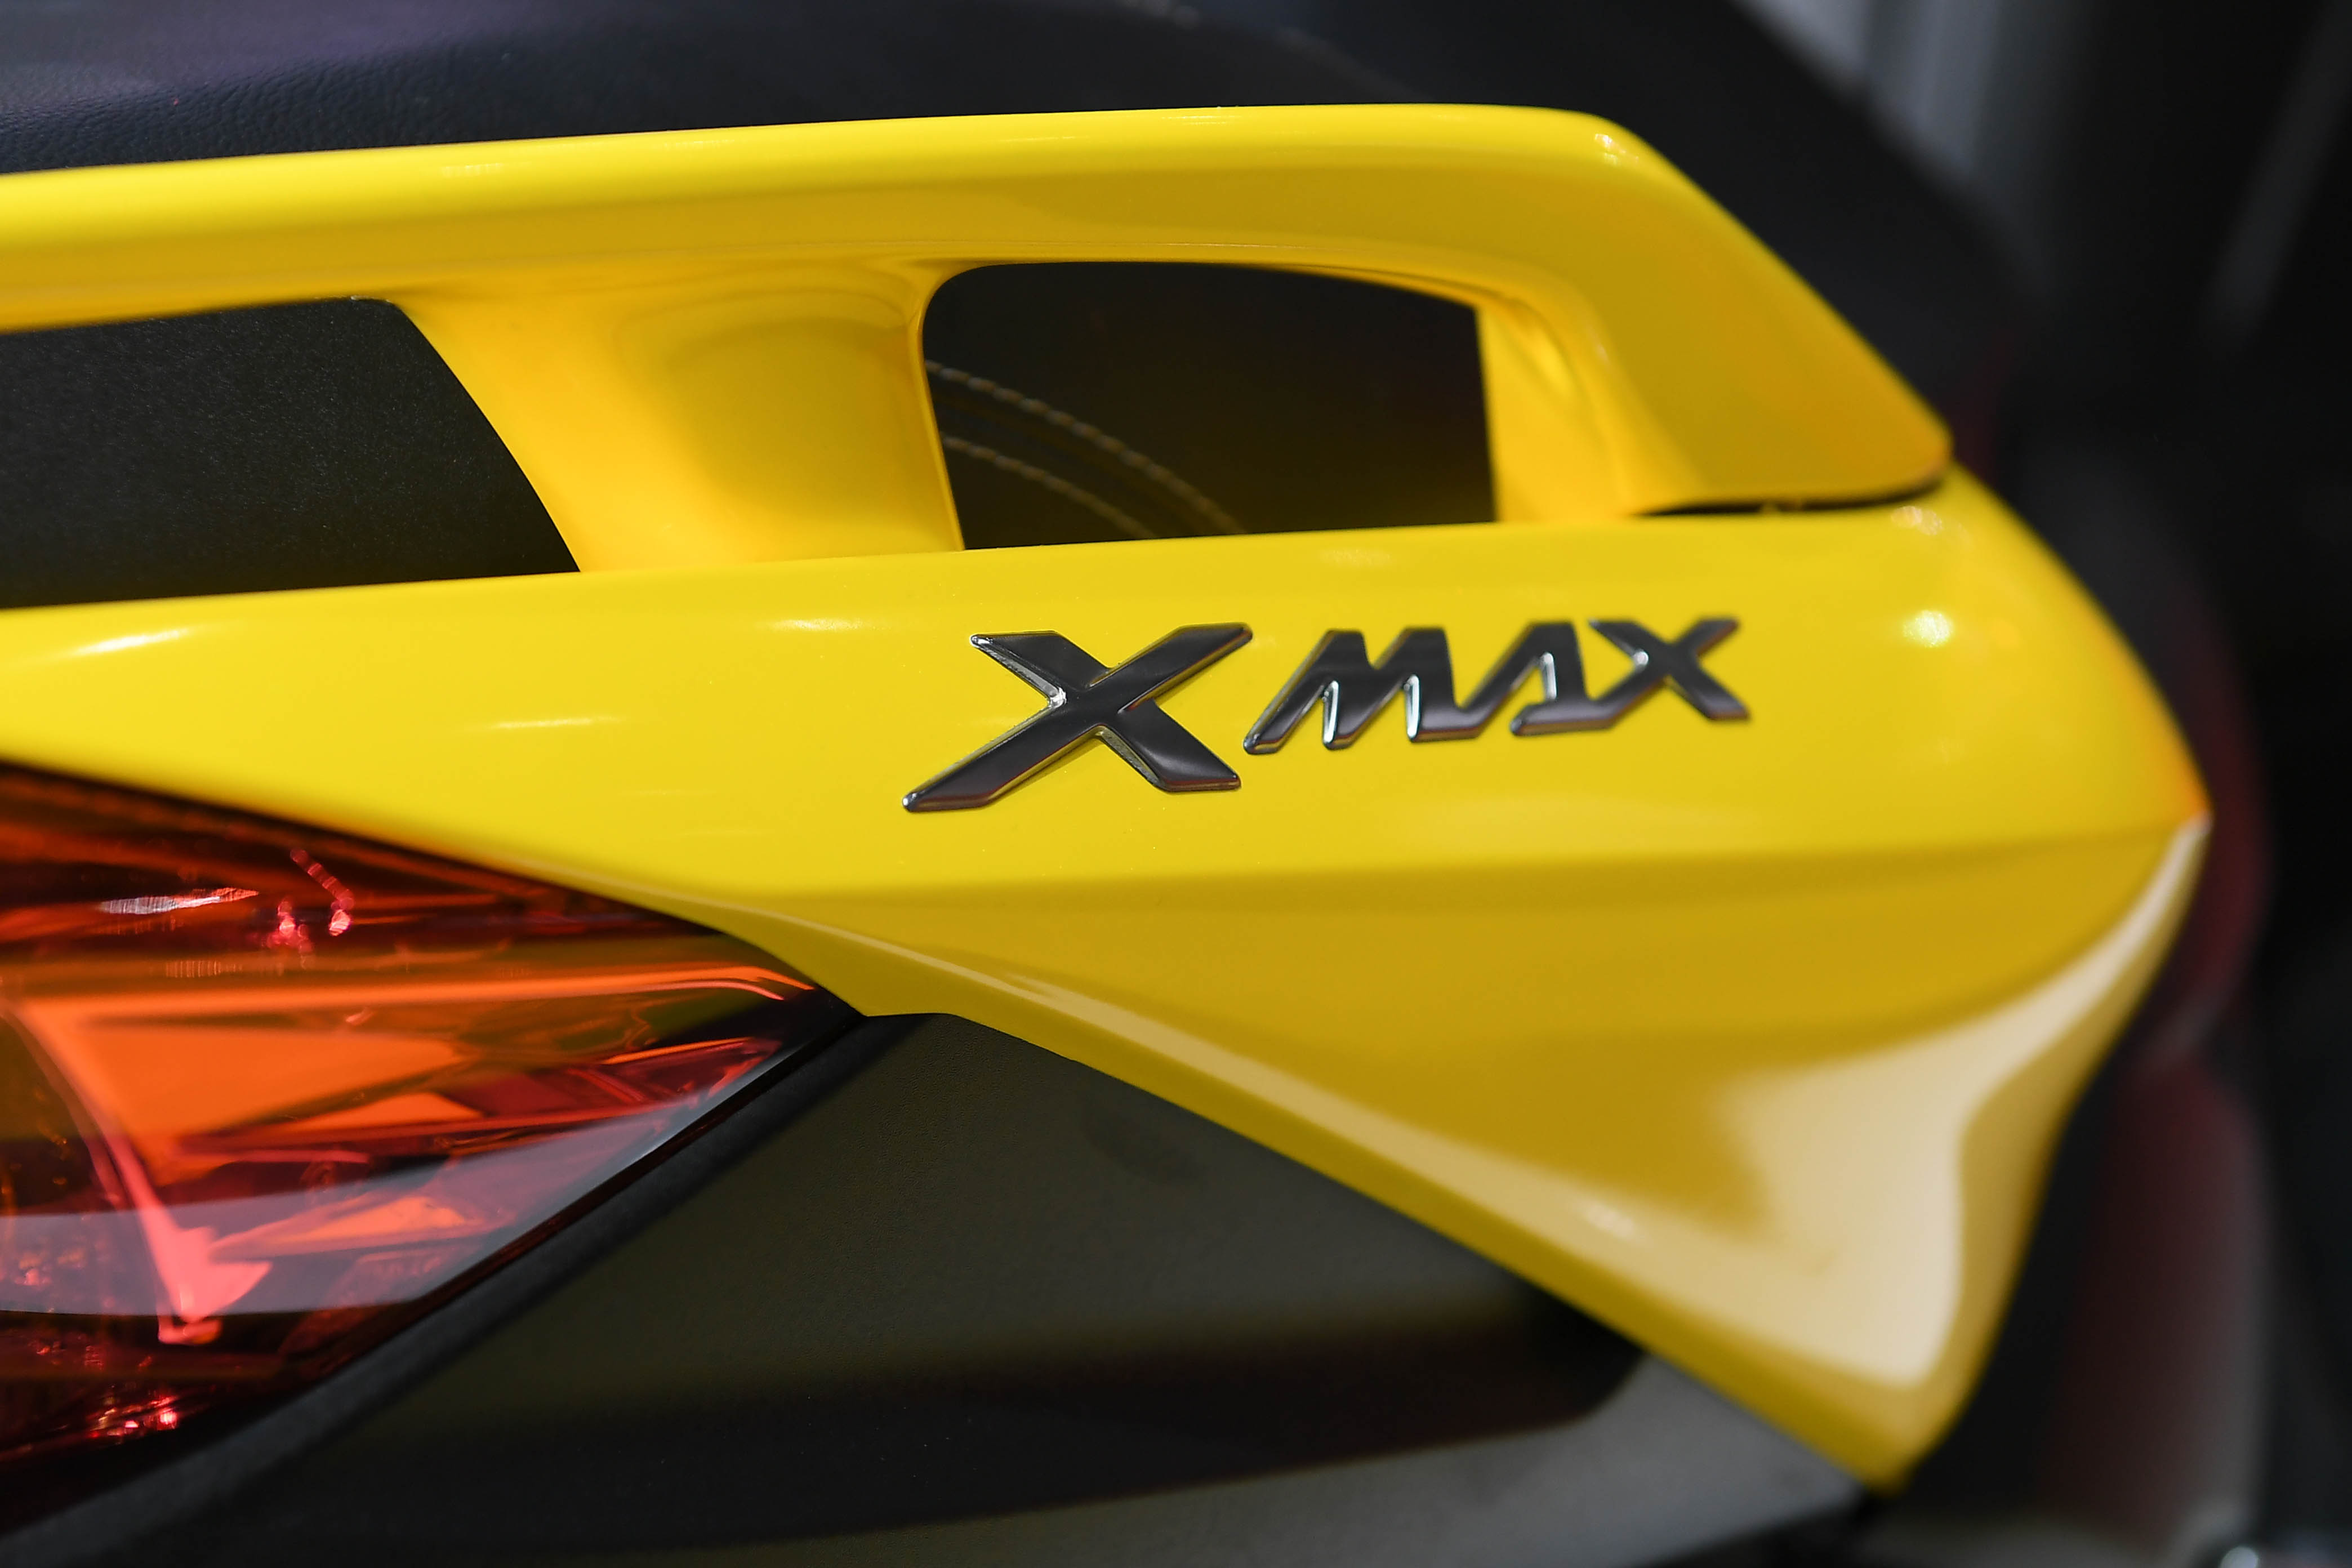 17 ยามาฮ่าเปิดตัว XMAX 300 พร้อมประกาศราคาอย่างเป็นทางการในงาน Big Motor Sale 2017